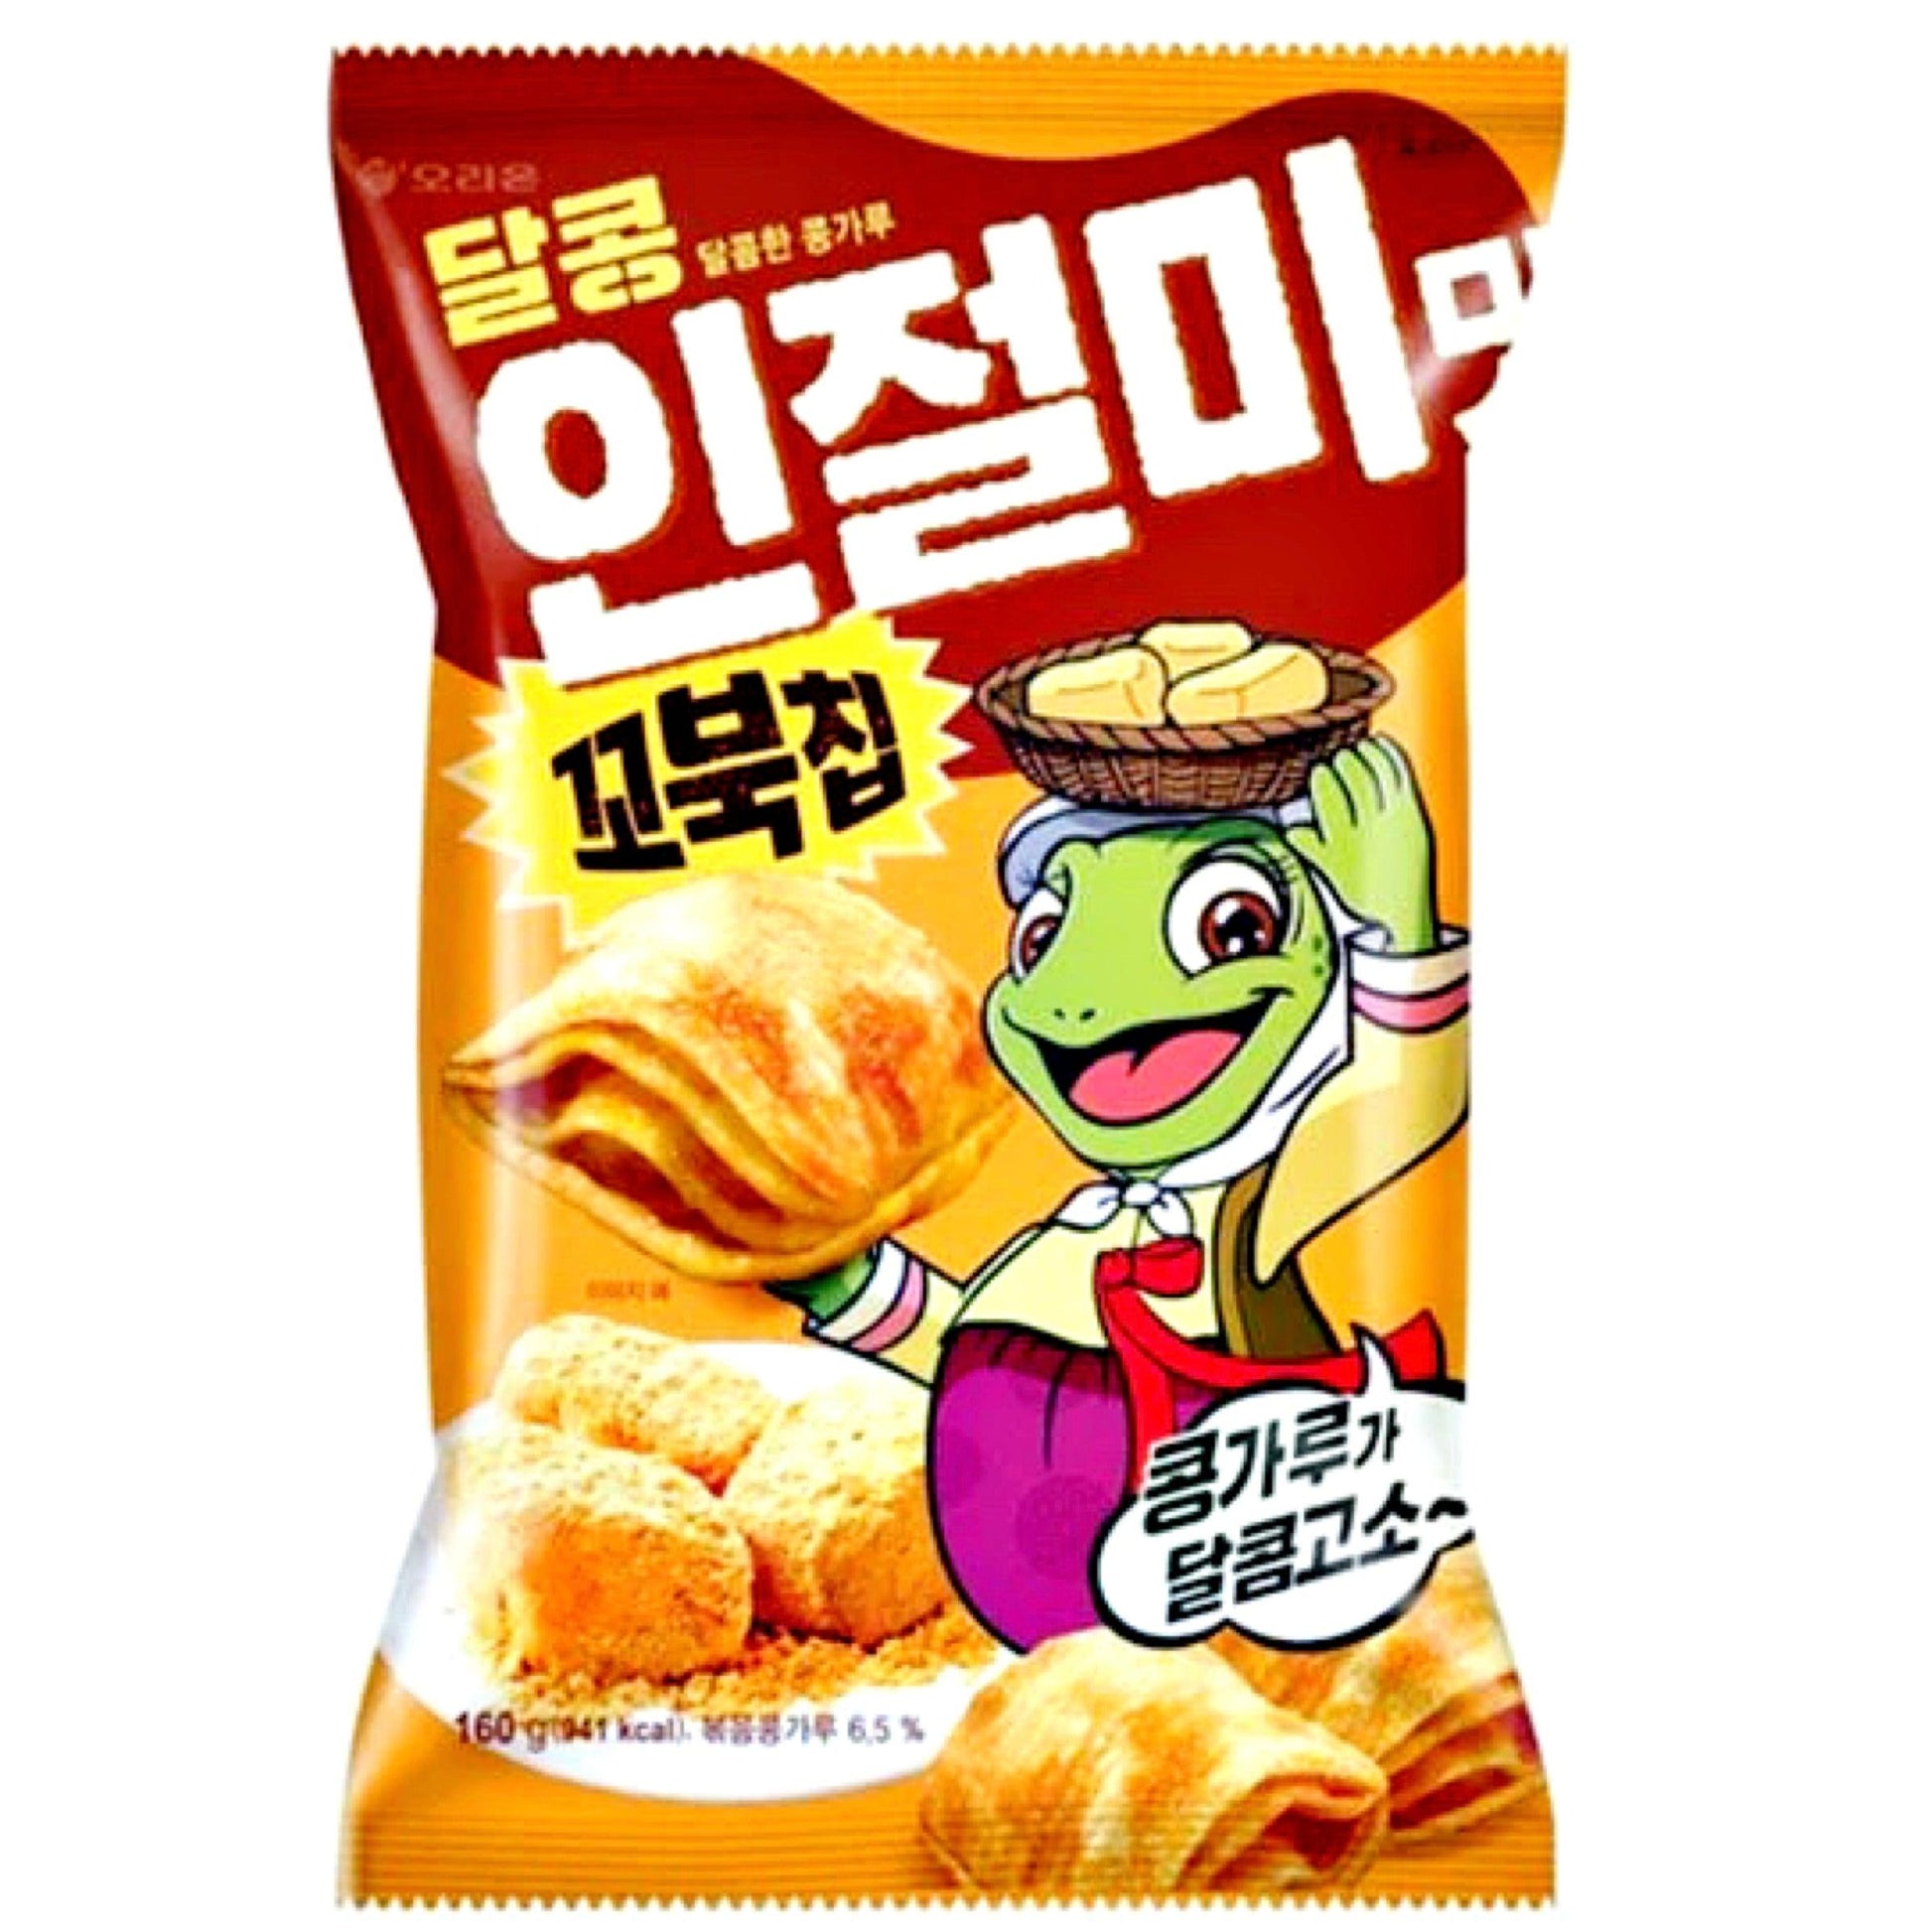 Orion Turtle Chips Injeolmi 160g - The Snacks Box - Asian Snacks Store - The Snacks Box - Korean Snack - Japanese Snack